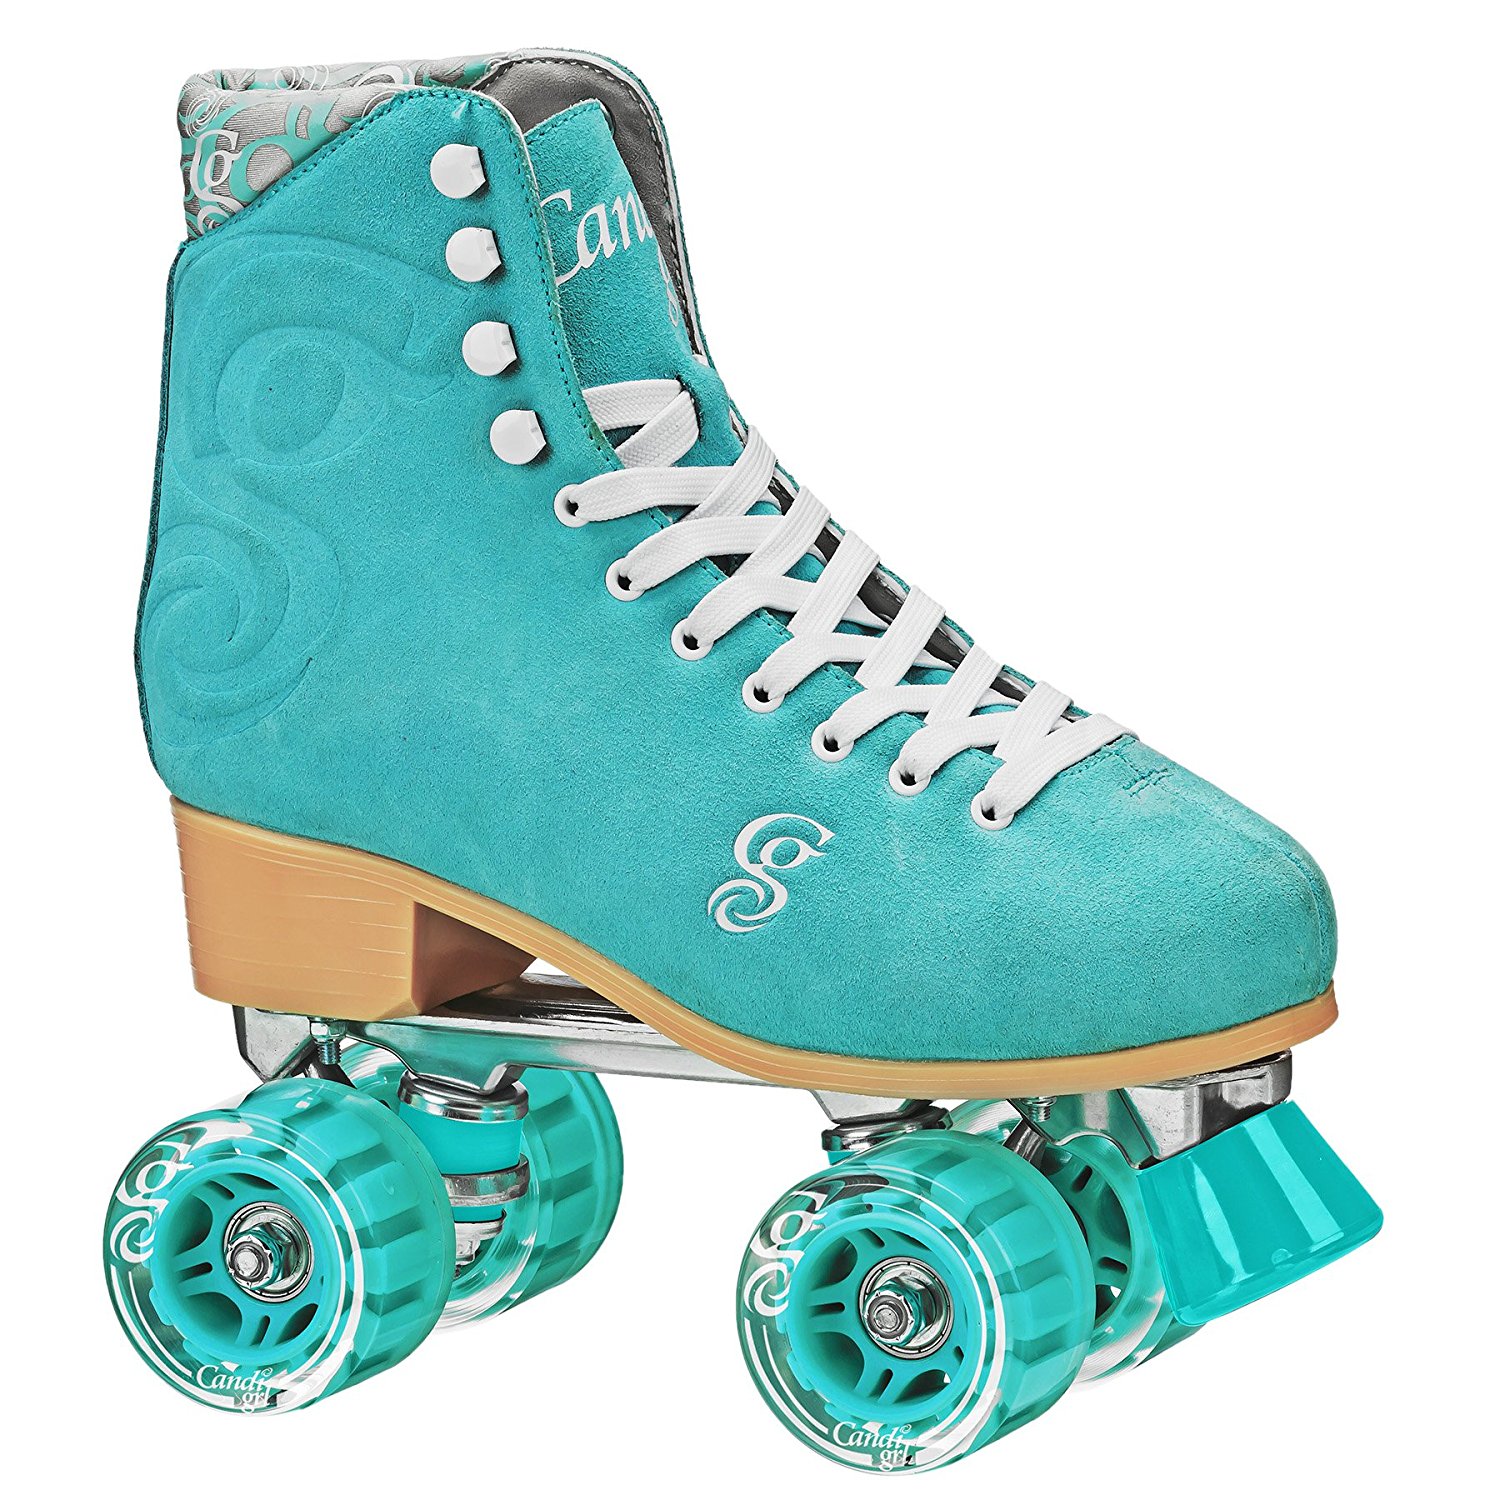 Candi Girl CARLIN Brushed Suede Blue & Burgundy Quad Roller Skates 